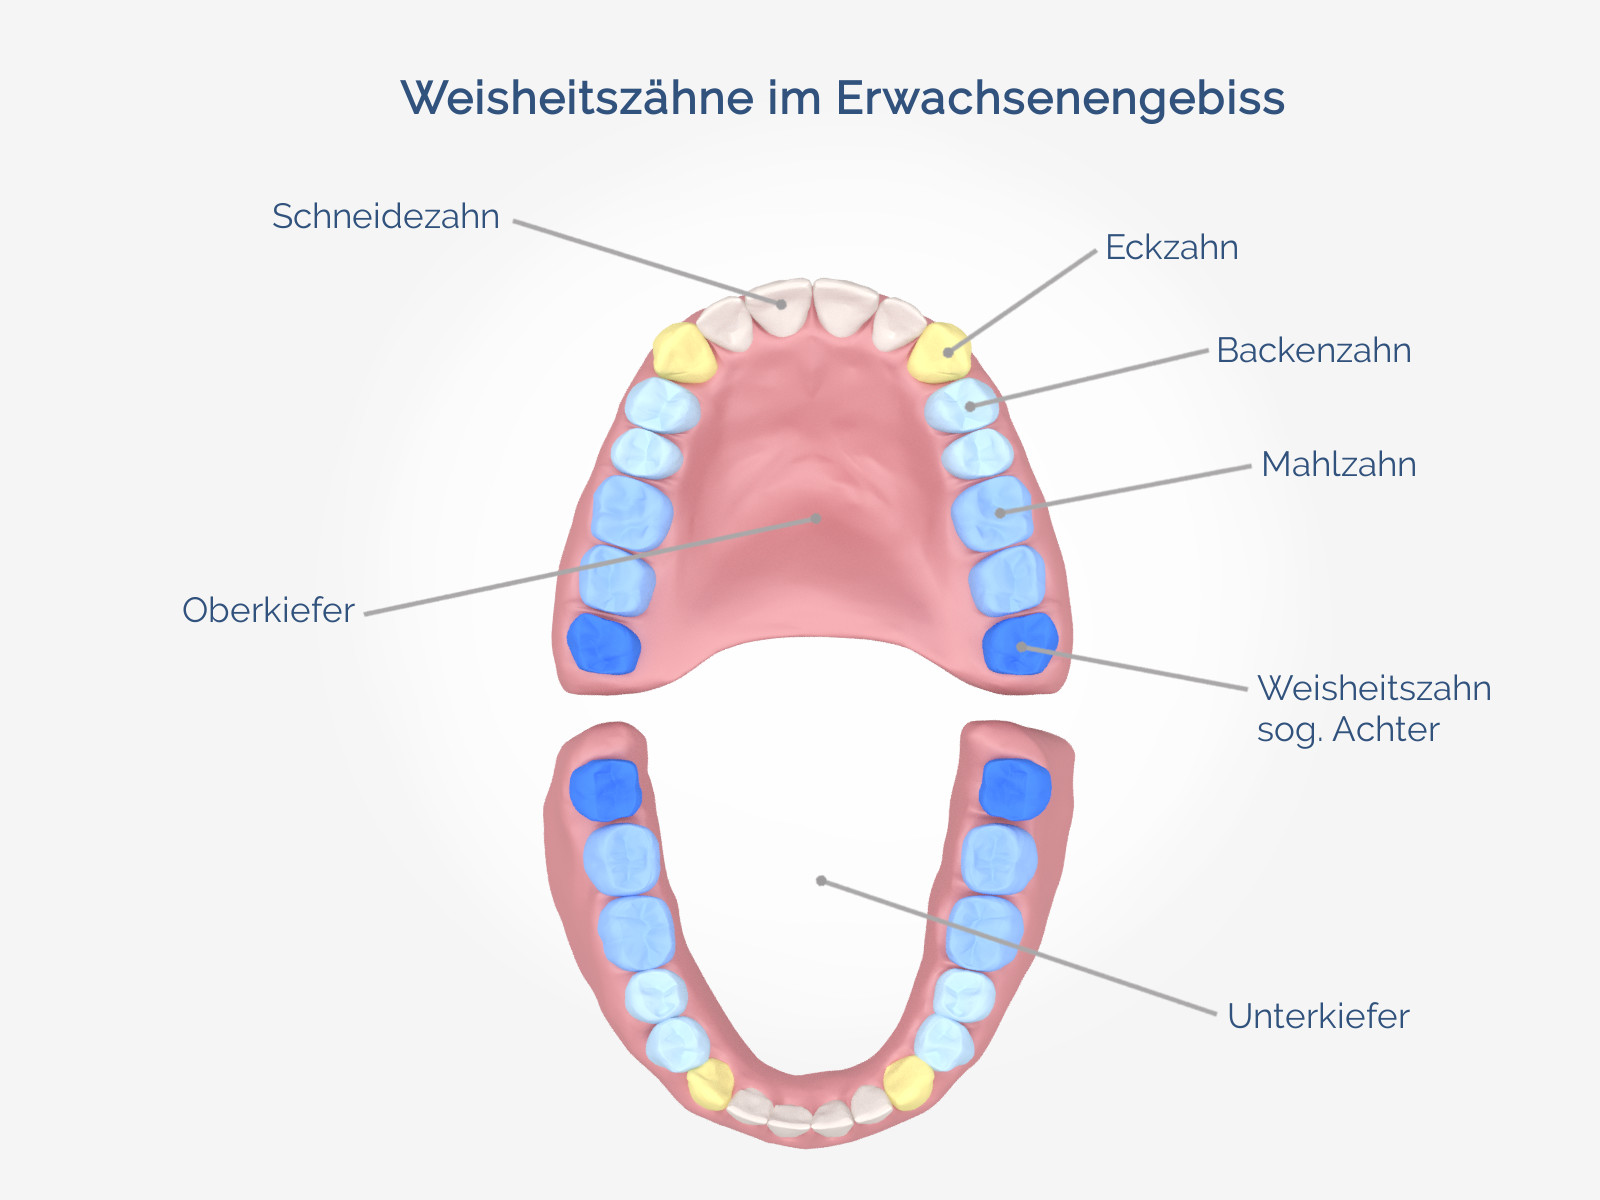 Zahnfleisch weisheitszahn drückt gegen Zahnentzündung: Pulpitis,